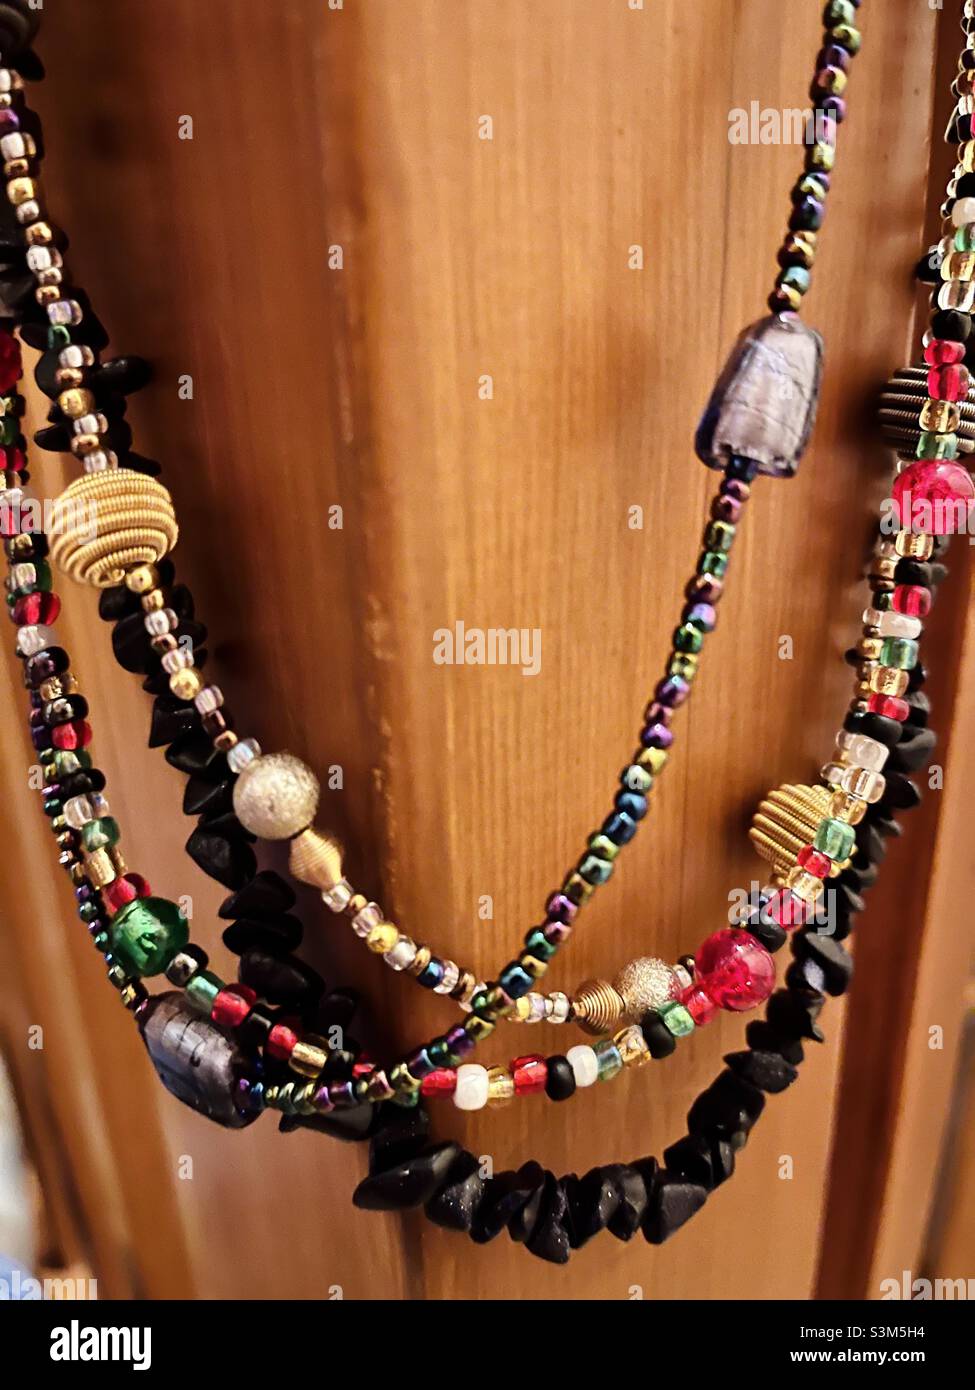 Colliers en perles multicolores sur un poteau en bois Banque D'Images